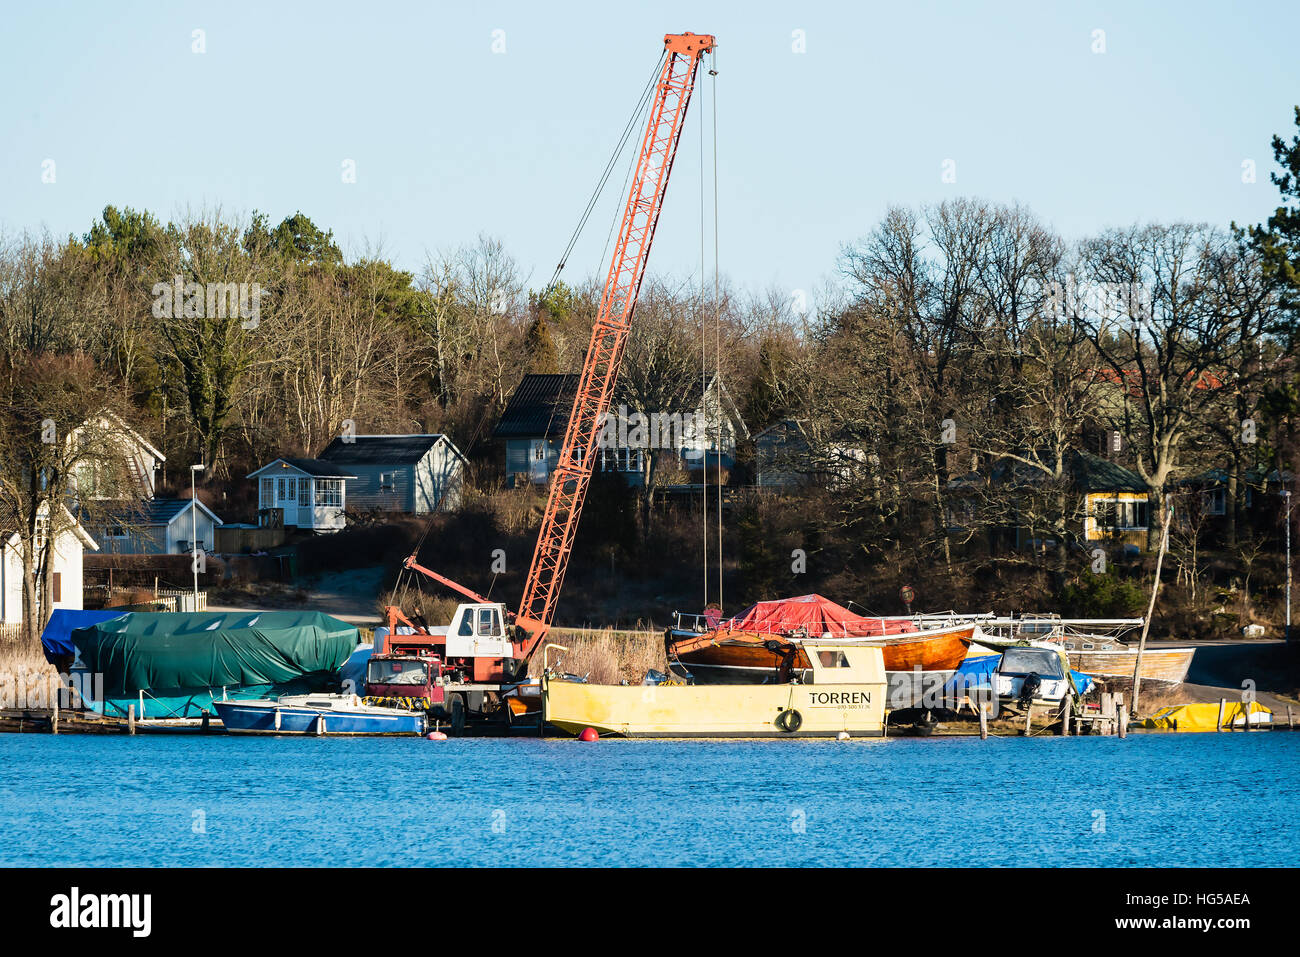 Ronneby, Suède - 2 janvier 2017 : documentaire de style balnéaire. Une grue mobile et quelques bateaux dans la marina. Maisons dans la forêt en arrière-plan. Banque D'Images